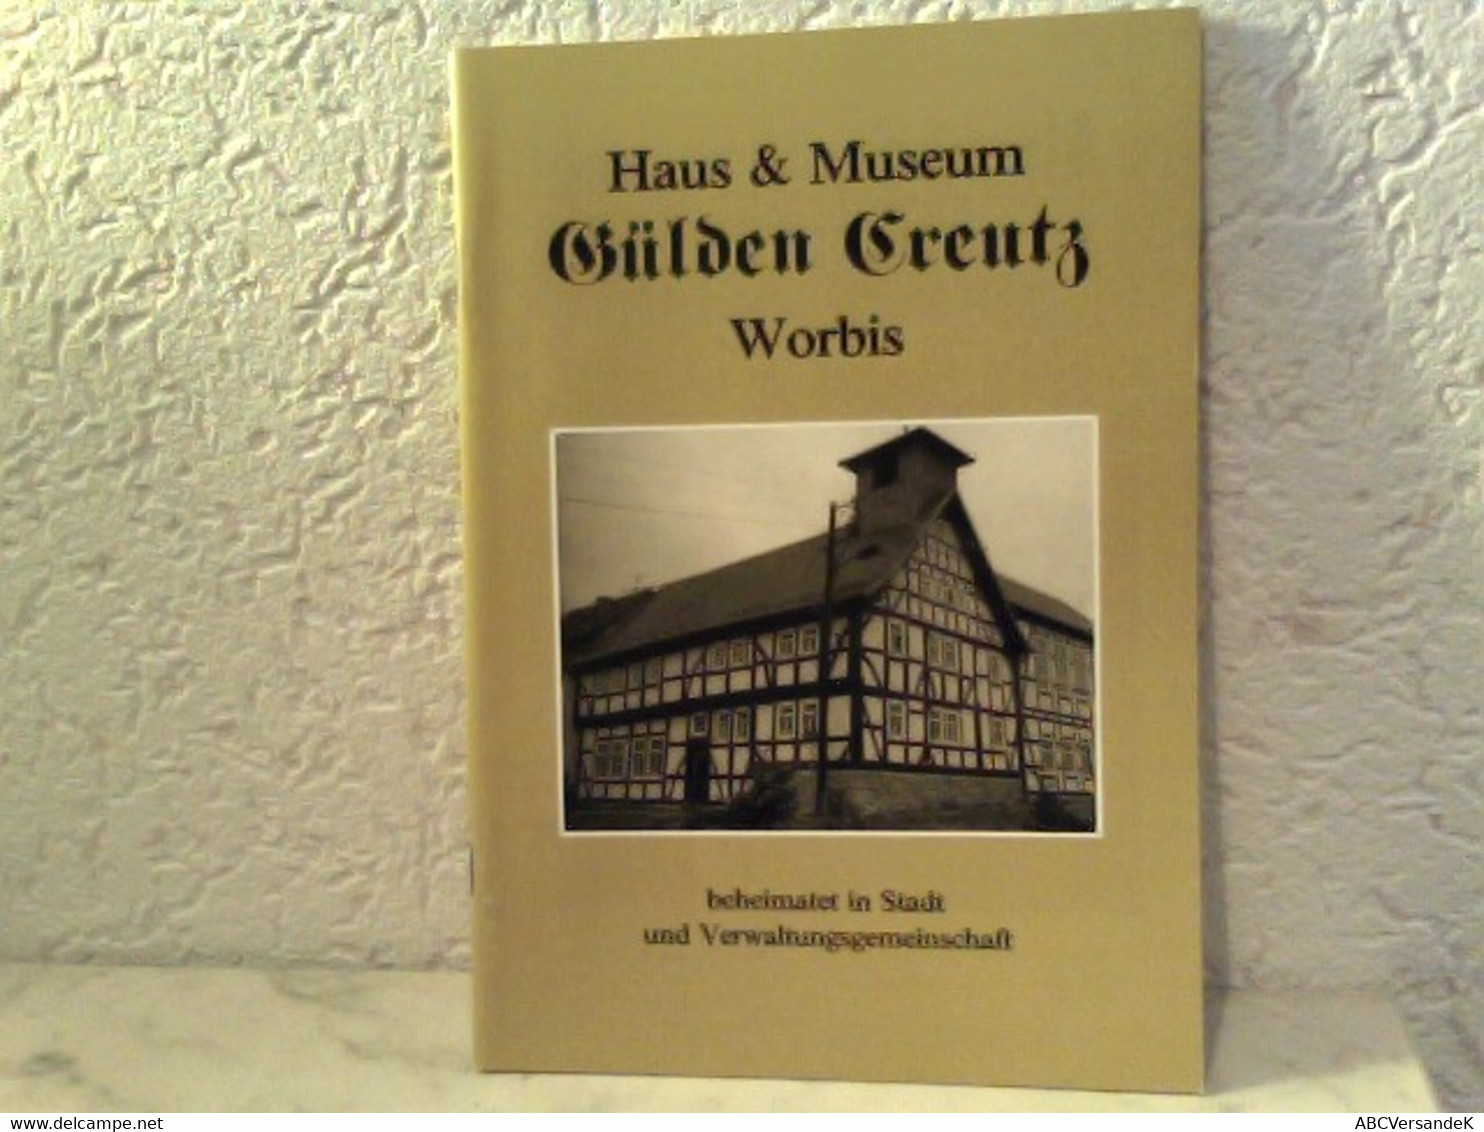 Haus & Museum - Gülden Creutz Worbis - Deutschland Gesamt